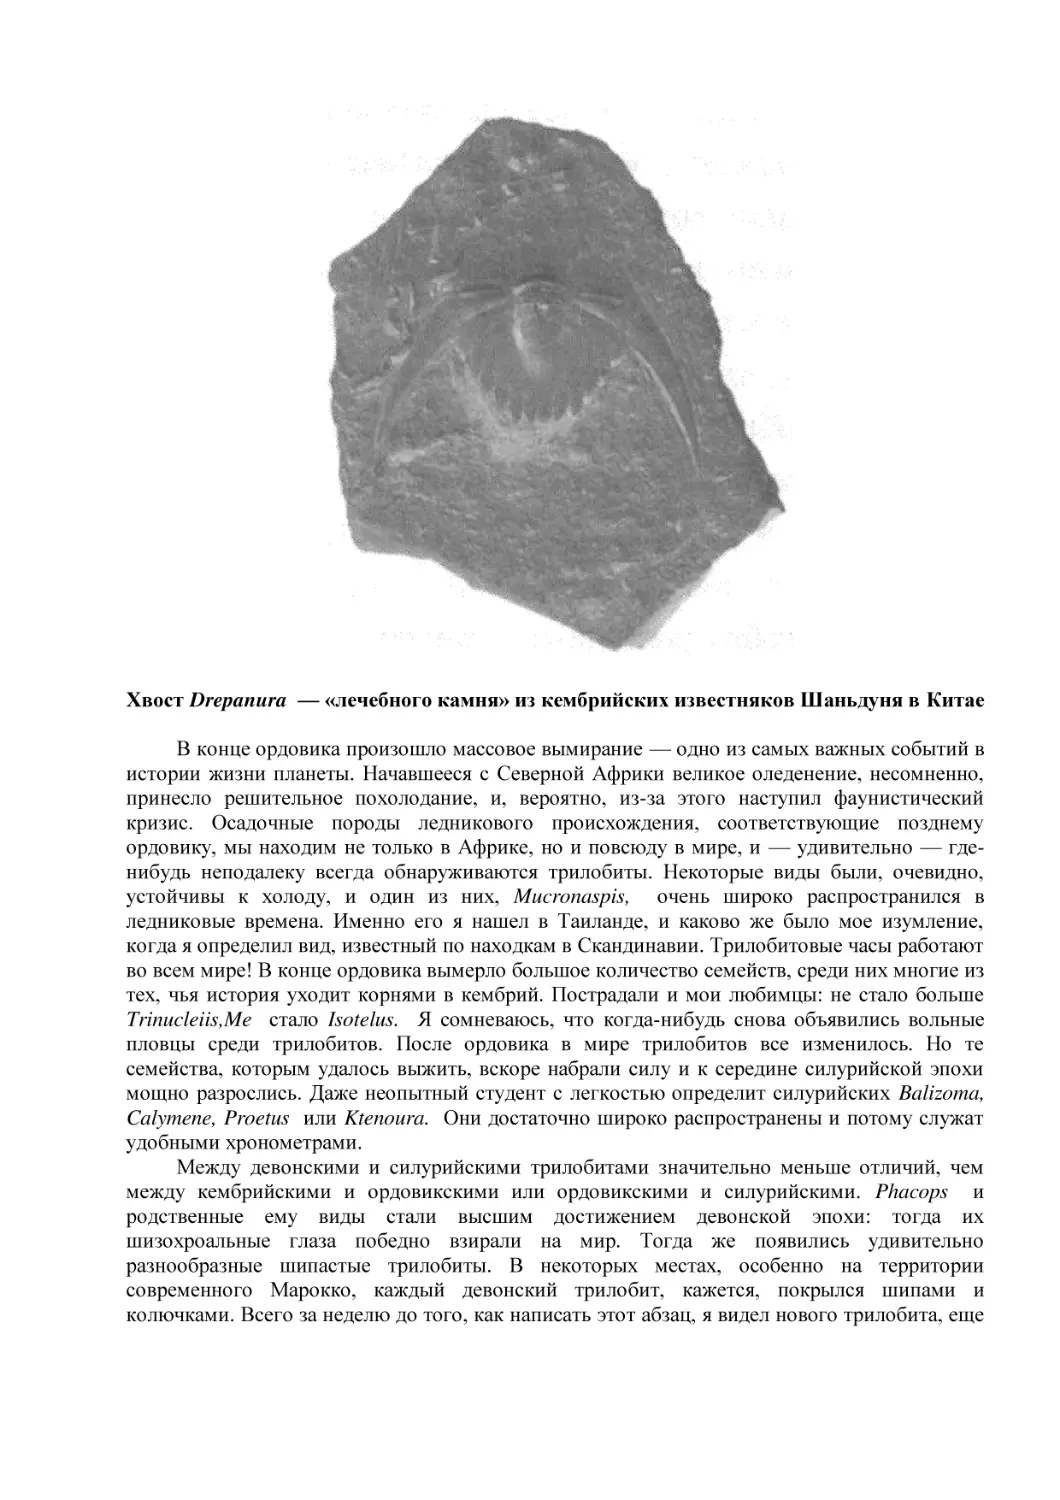 Хвост Drepanura  — «лечебного камня» из кембрийских известняков Шаньдуня в Китае